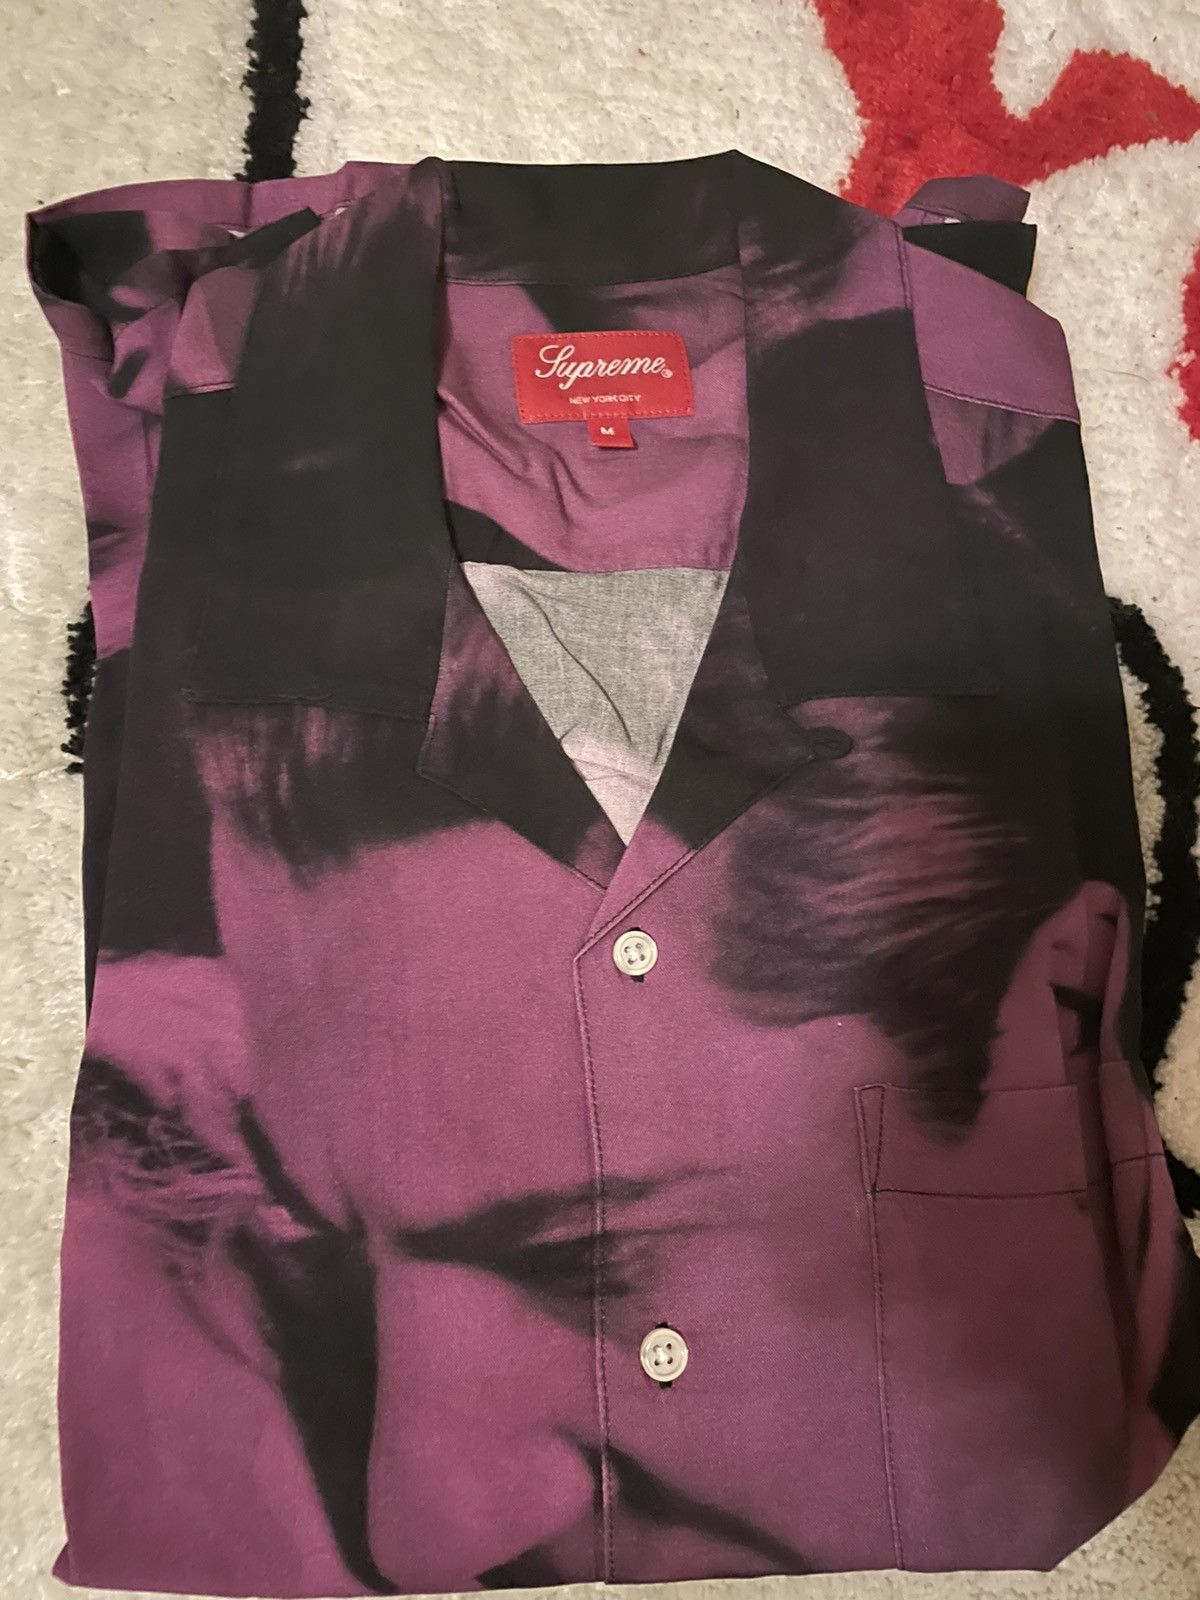 Supreme Bela Lugosi Rayon S/S Shirt | Grailed